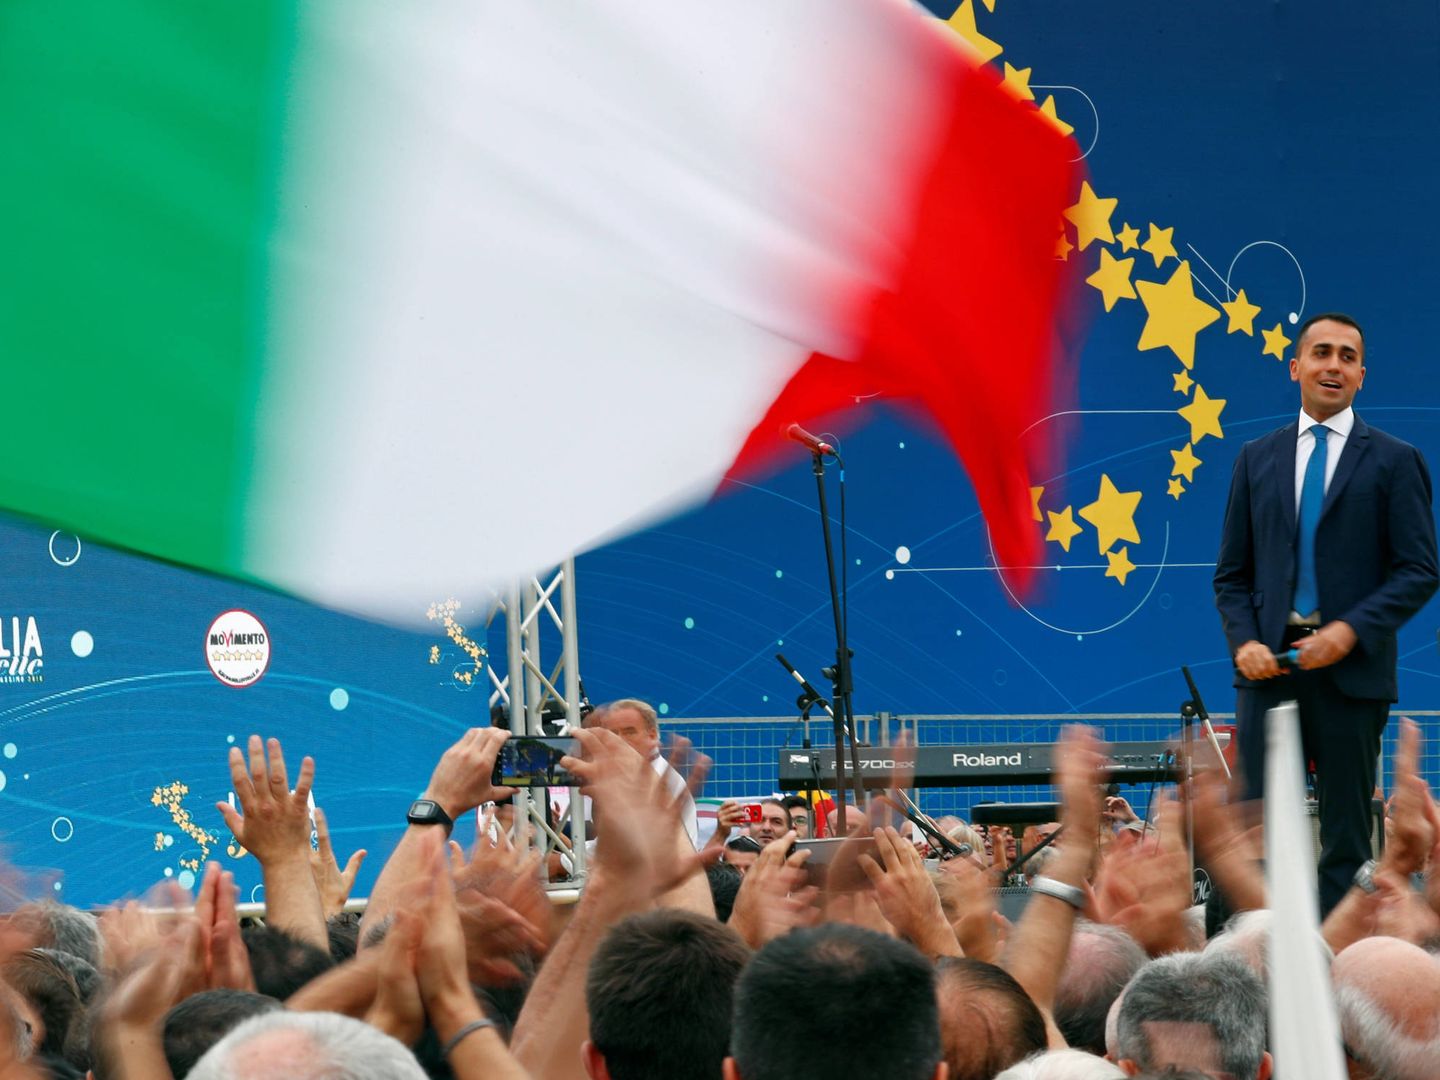 Luigi Di Maio, durante un evento del M5S en el Circo Masimo de Roma, el 21 de octubre de 2018. (Reuters)